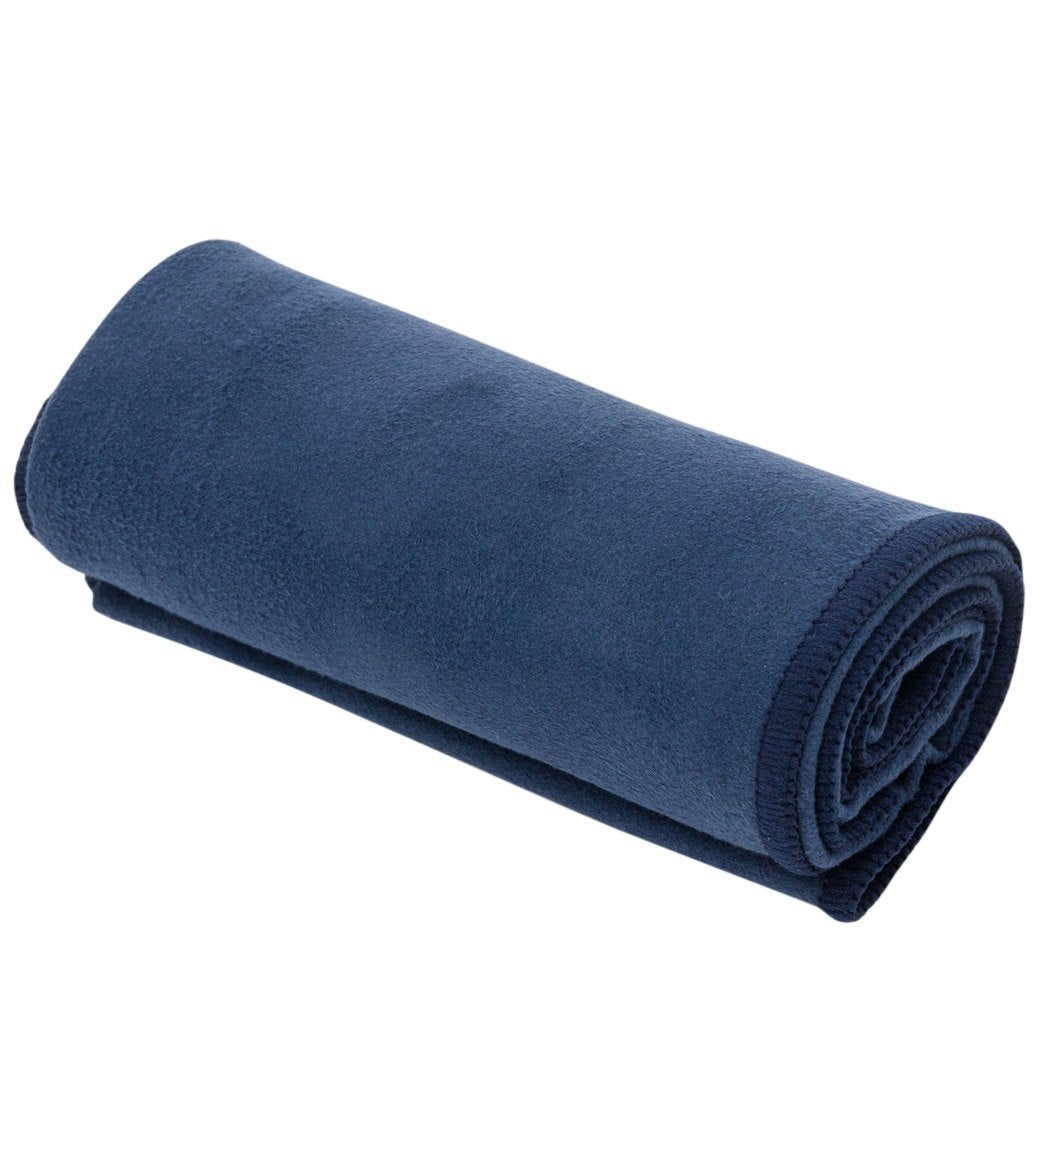 High Quality Yoga Hand Towel - eQua®